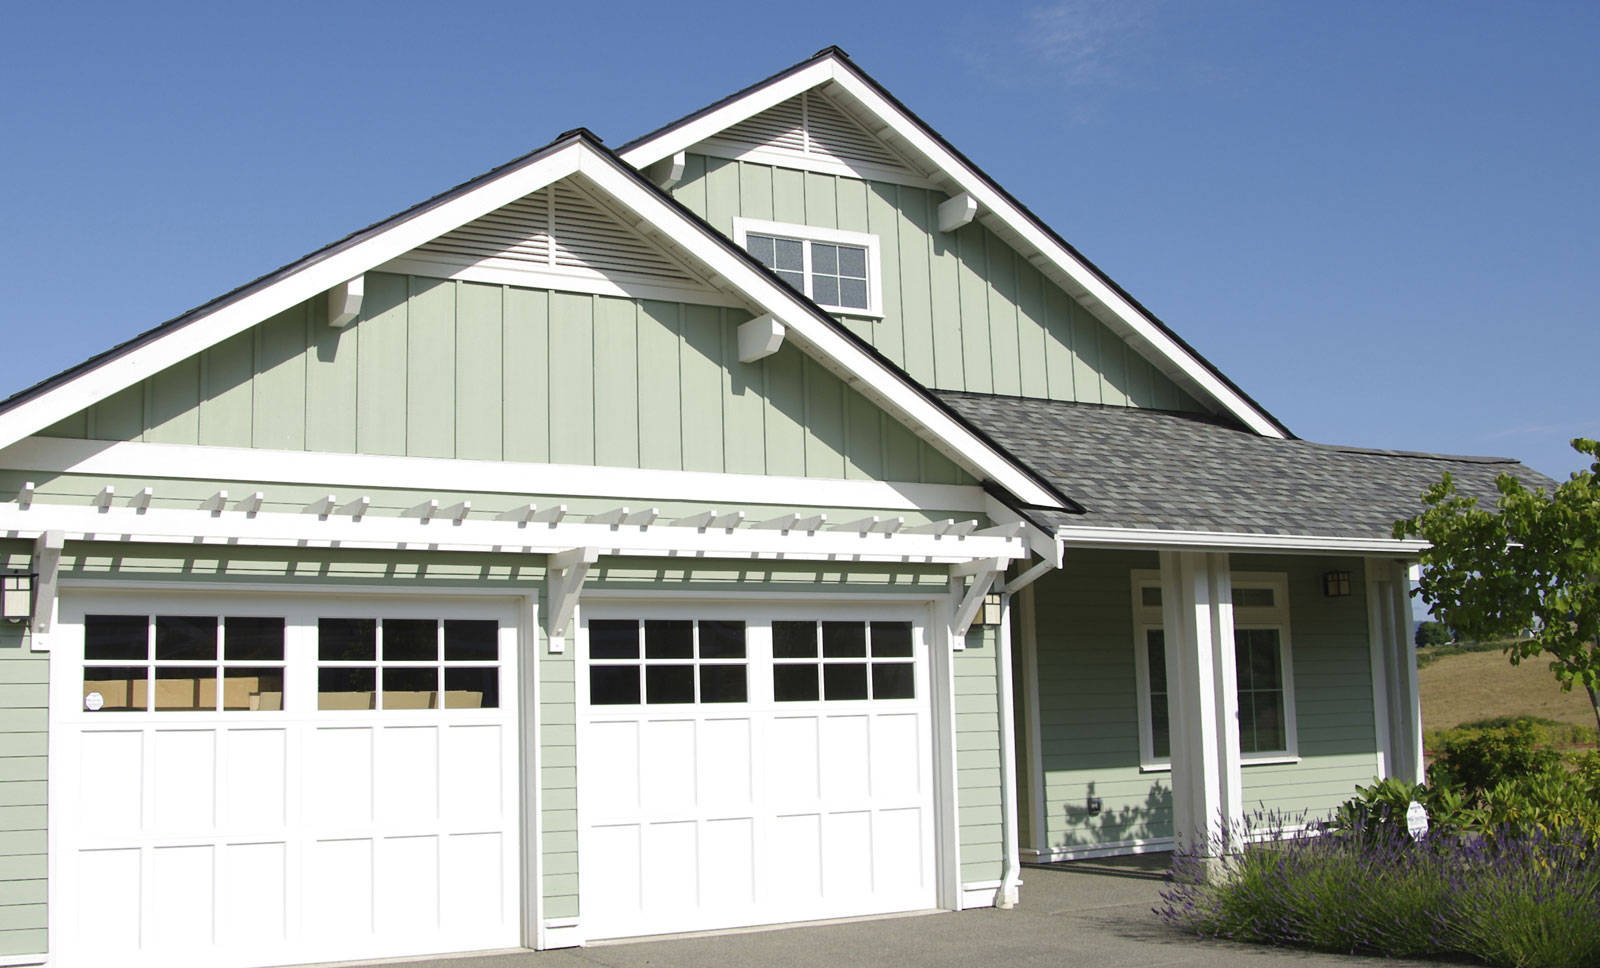 Energy Efficient Garage Doors: Save on your bills